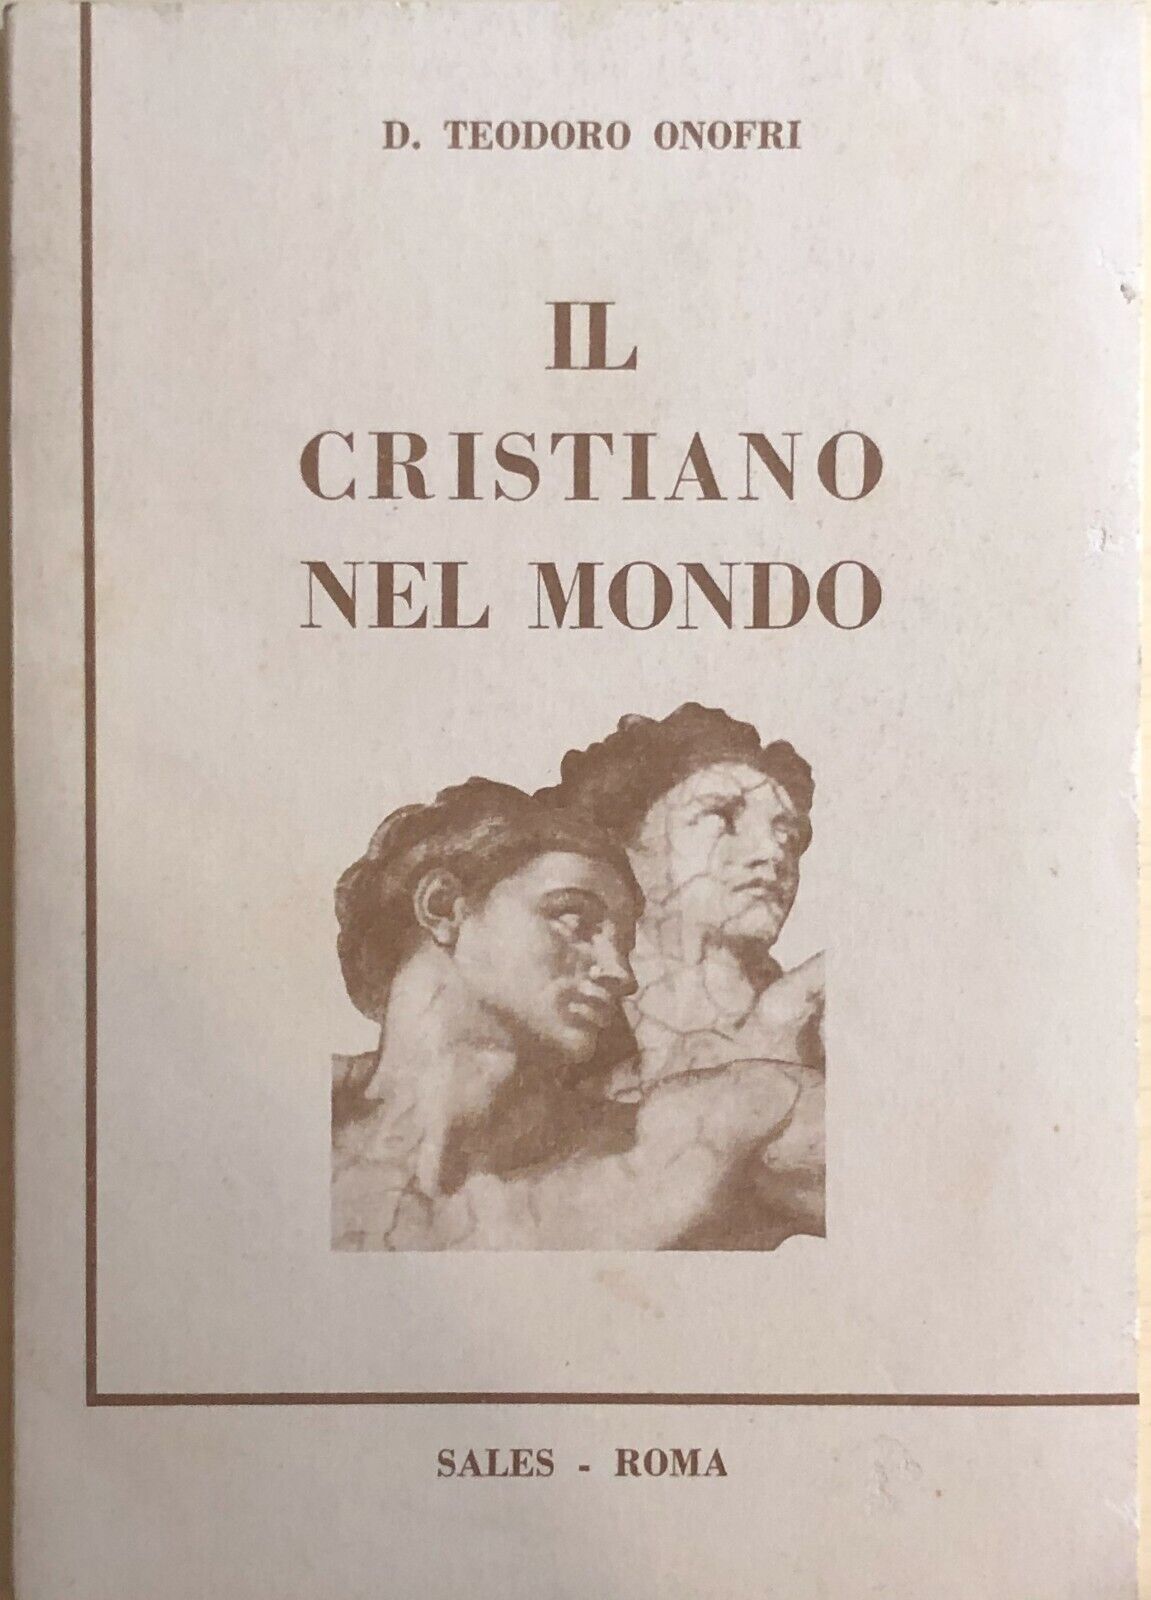 Il cristiano nel mondo di D.teodoro Onofri, 1966, Sales - Roma